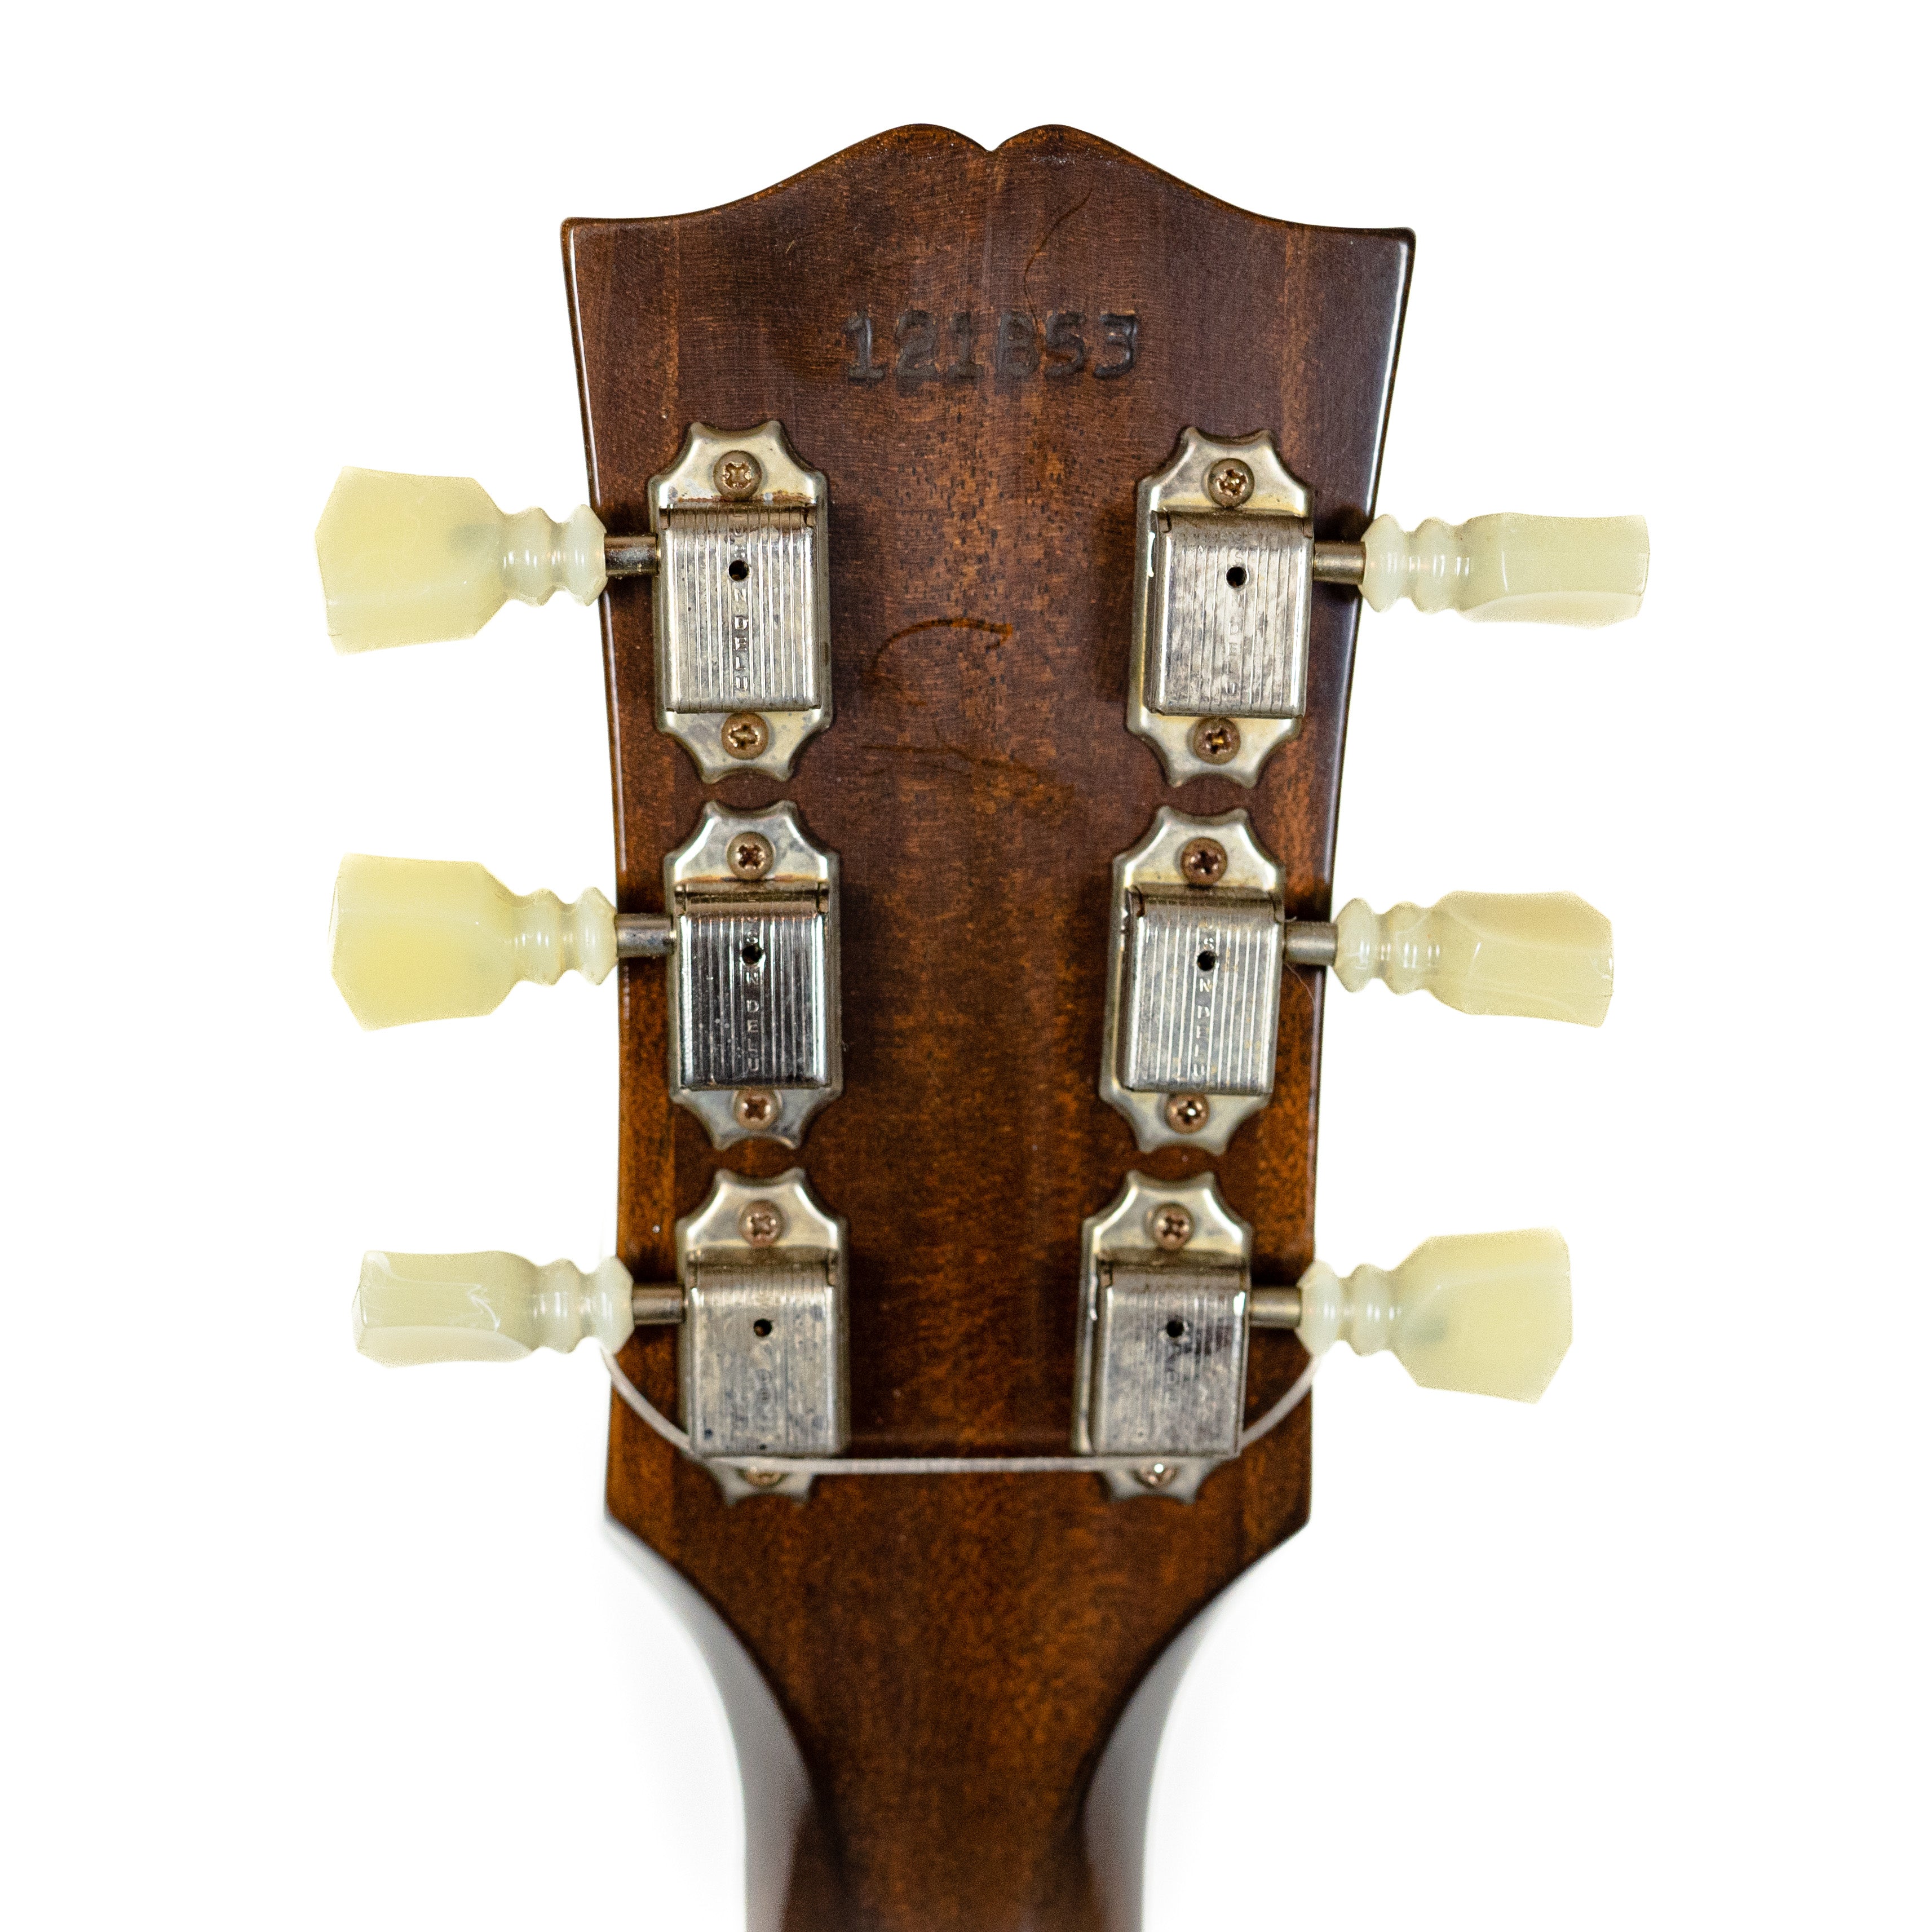 Gibson Custom 1961 ES-335 Reissue VOS Vintage Burst